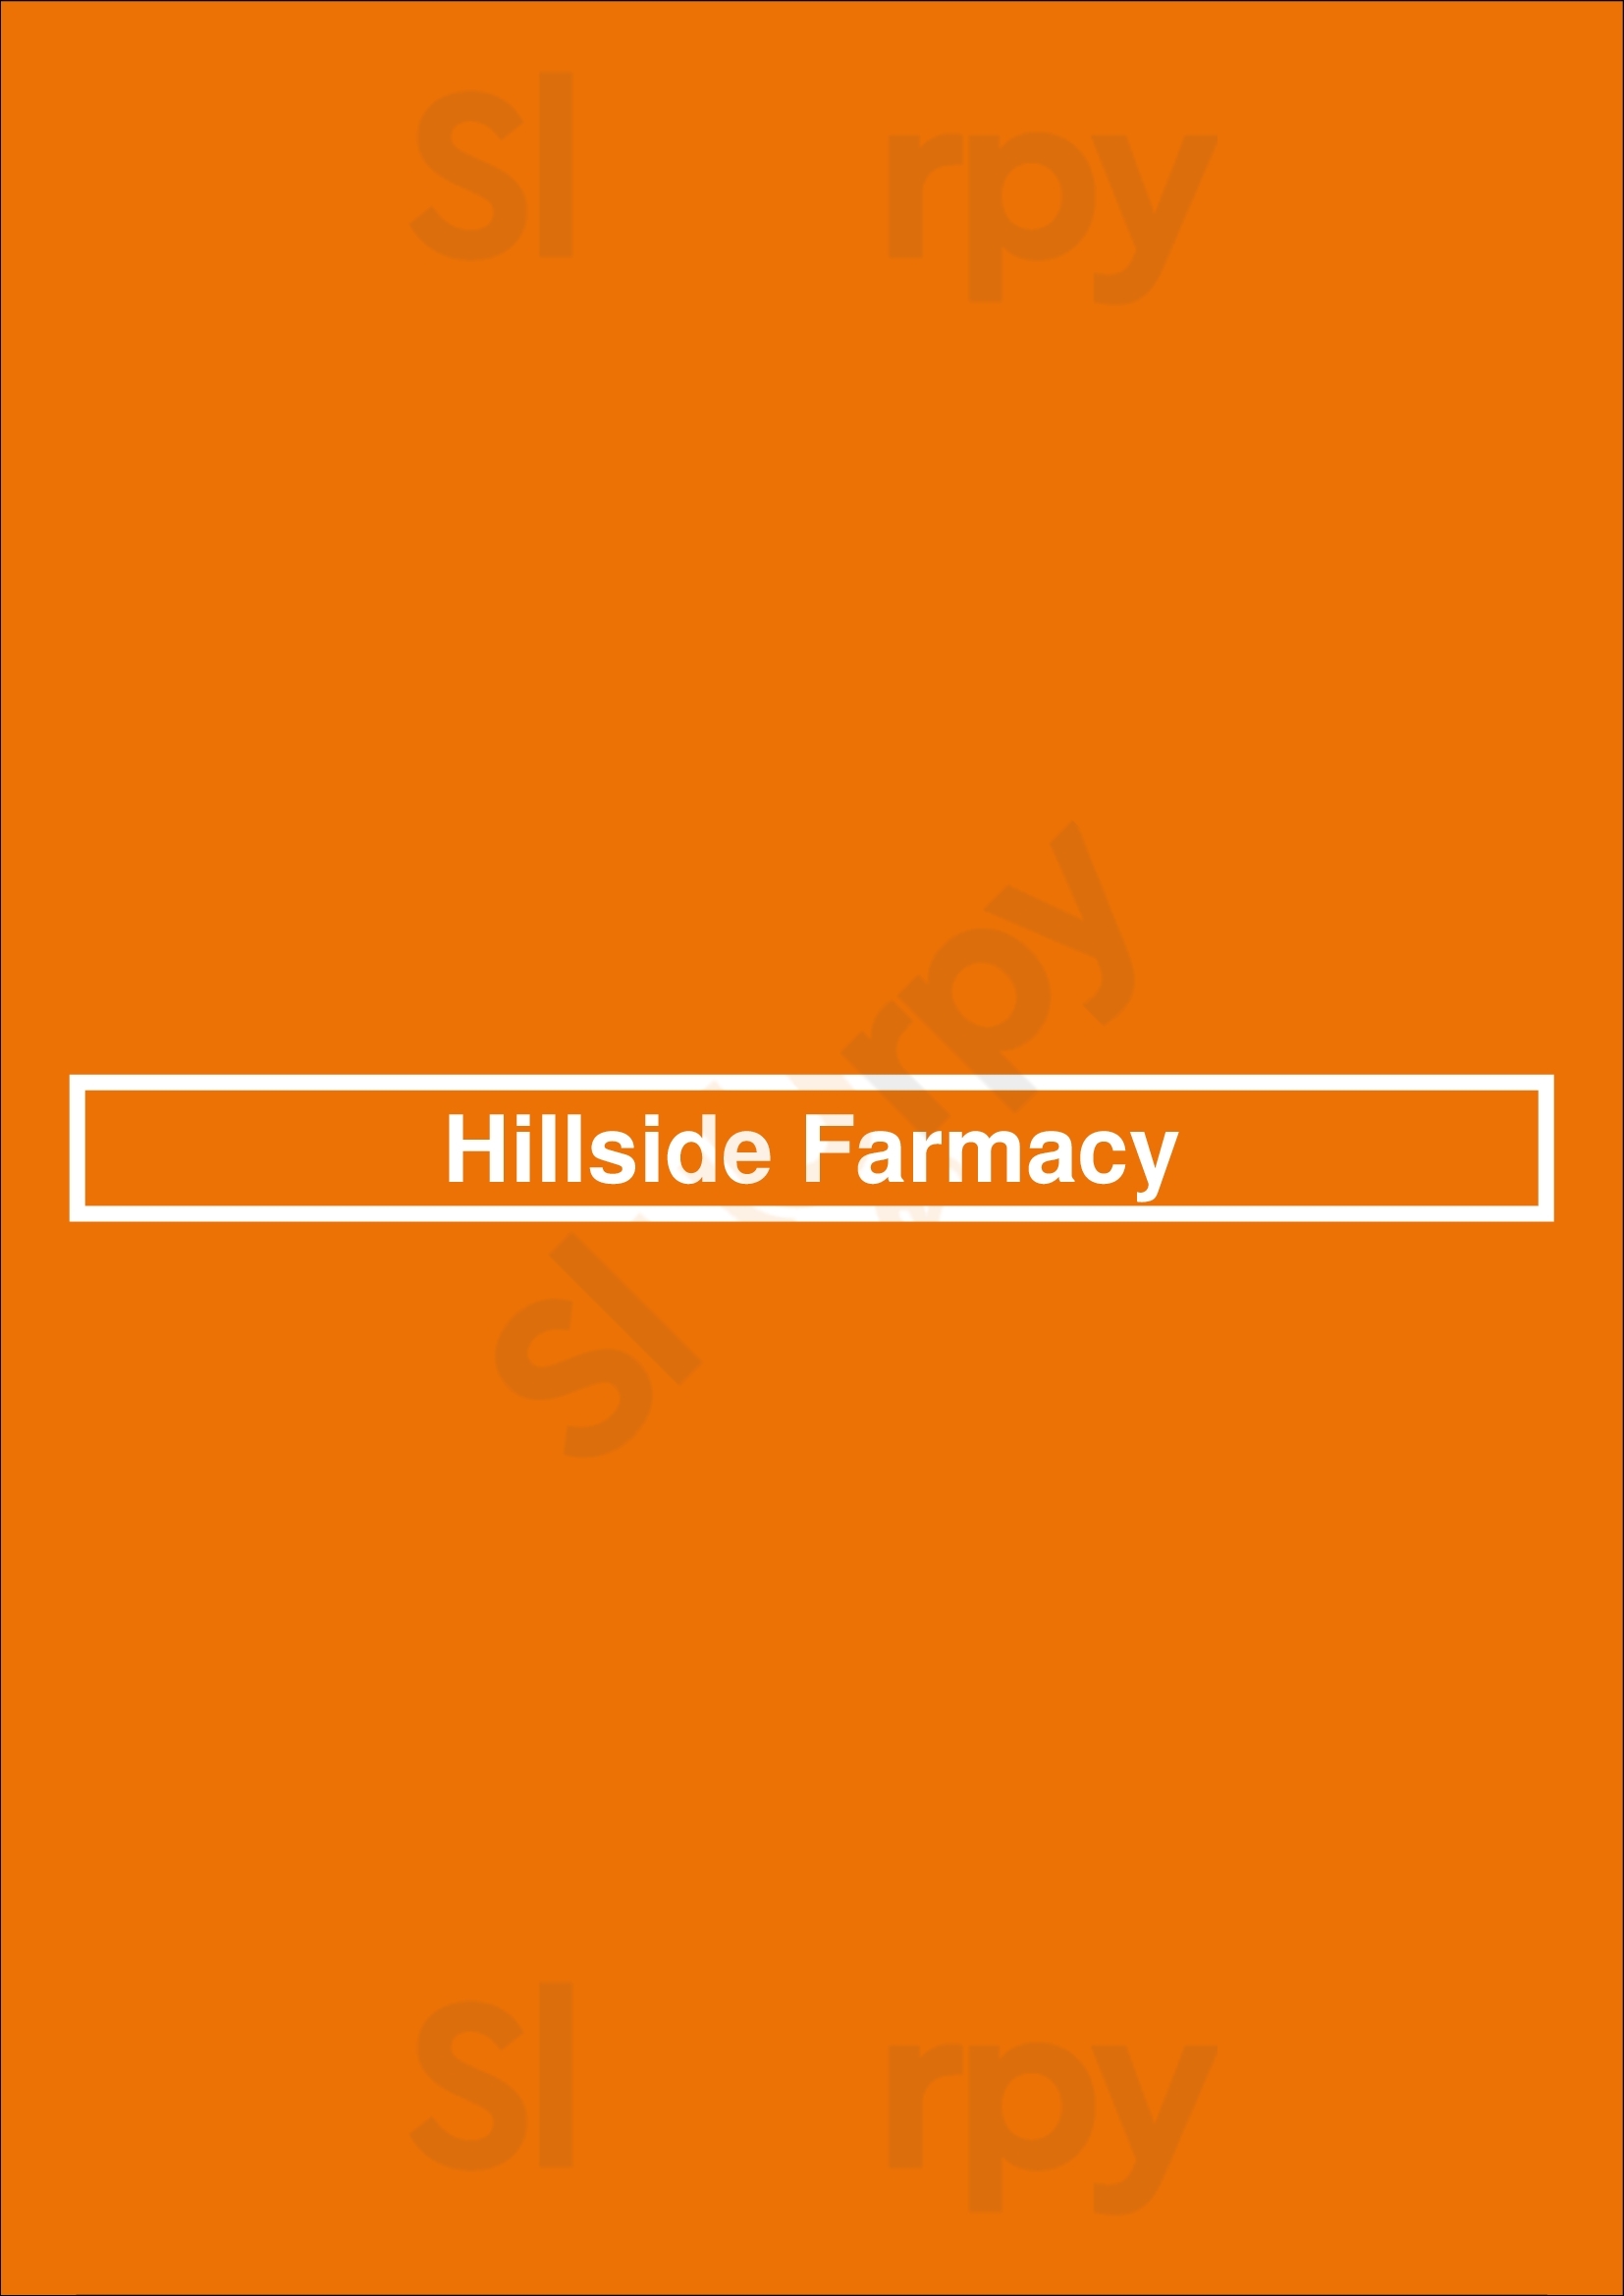 Hillside Farmacy Austin Menu - 1